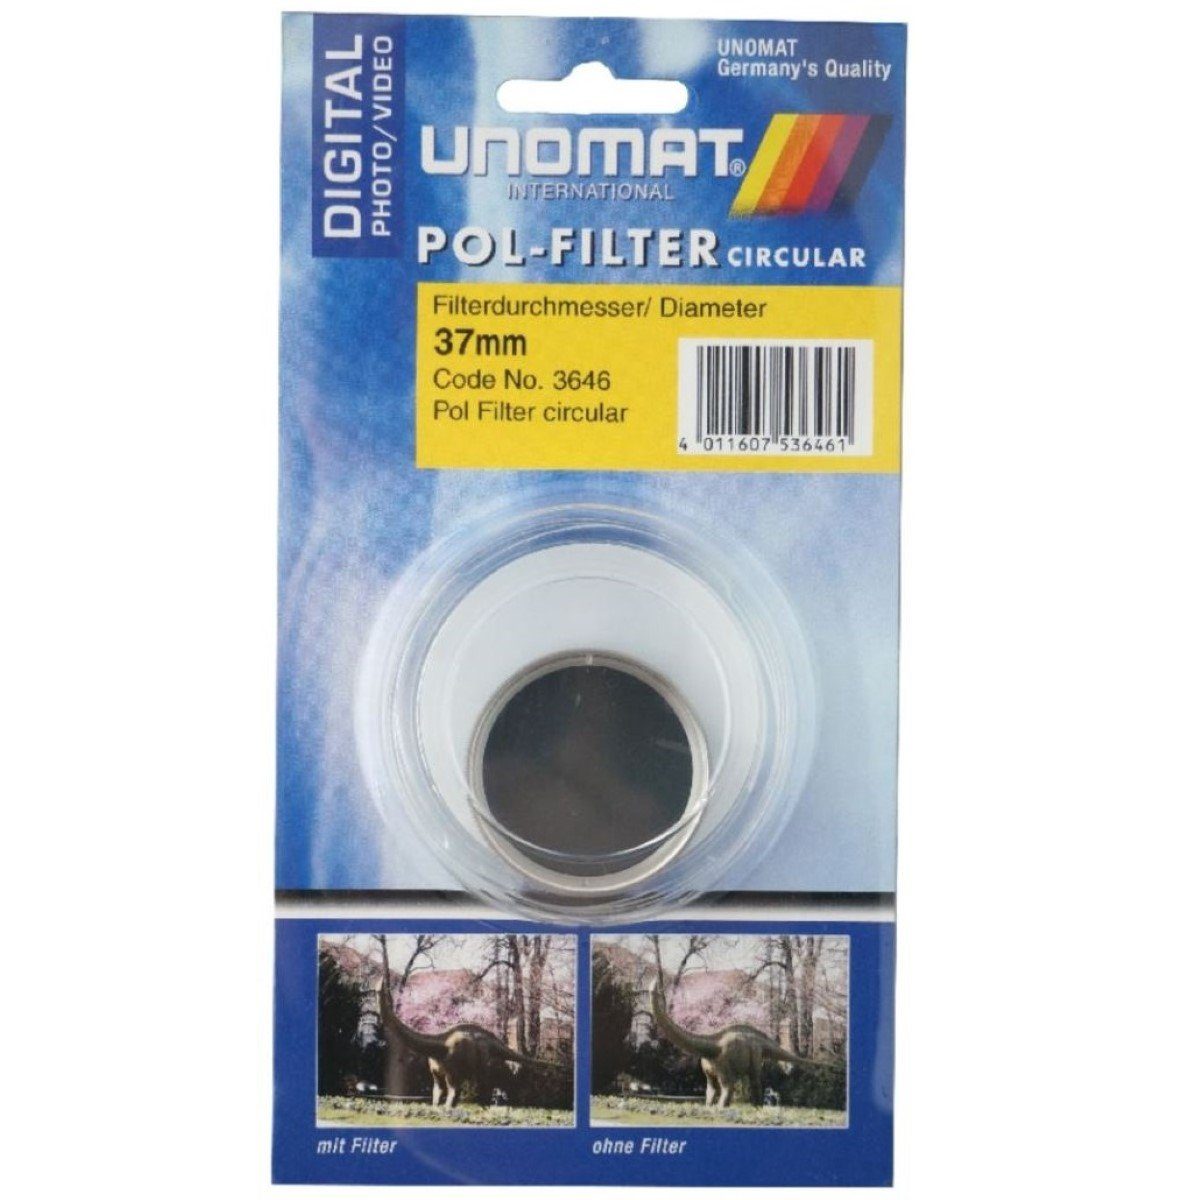 Objektivzubehör (Pol-Filter Digital, 37mm circular etc) Pol-Filter Polarisations-Filter für Vergütung, für Kamera HTMC Farben kräftige